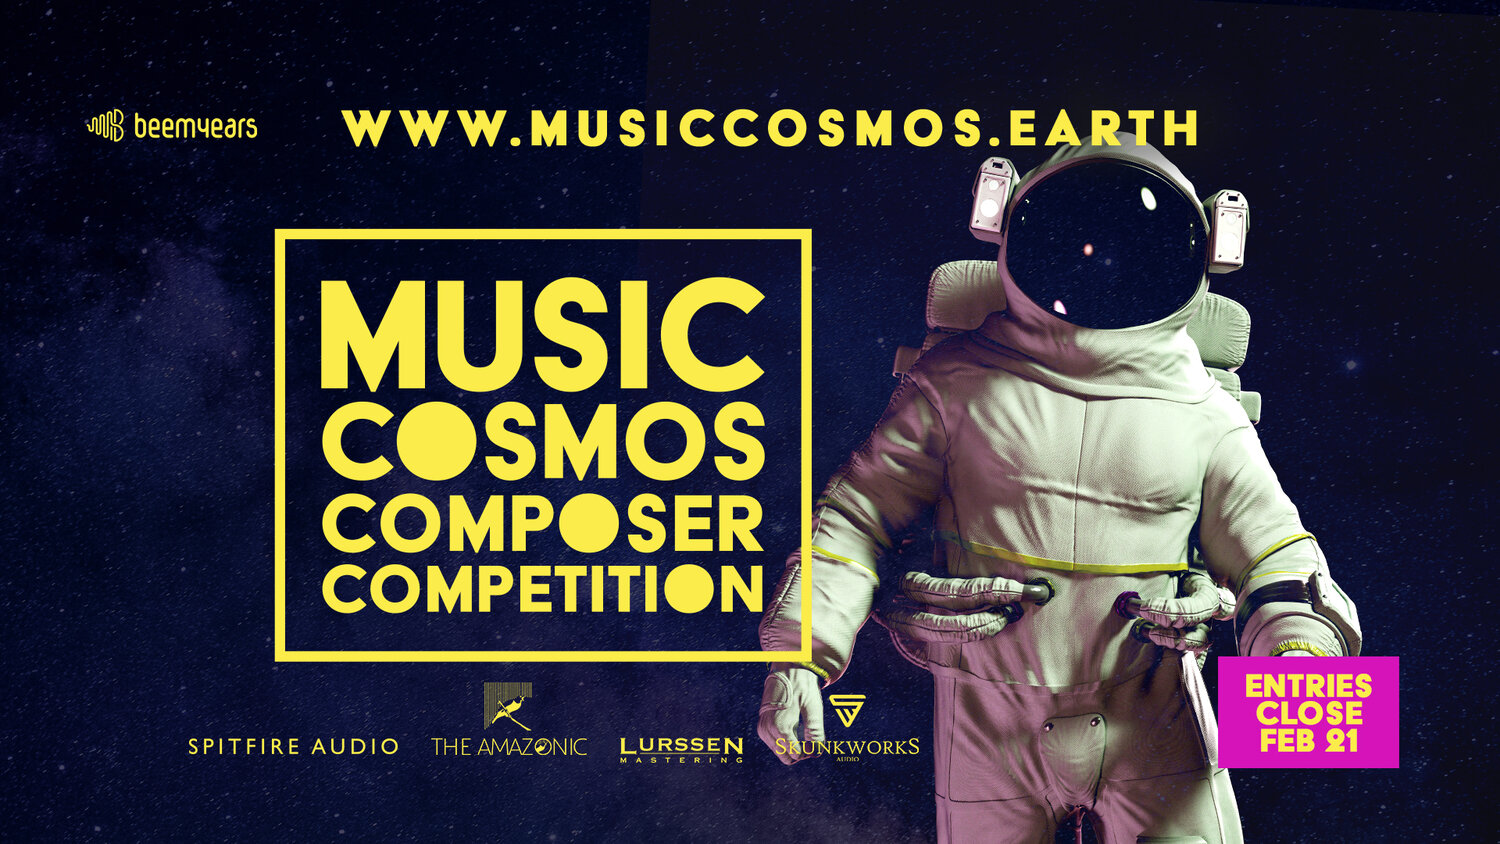 www.musiccosmos.earth